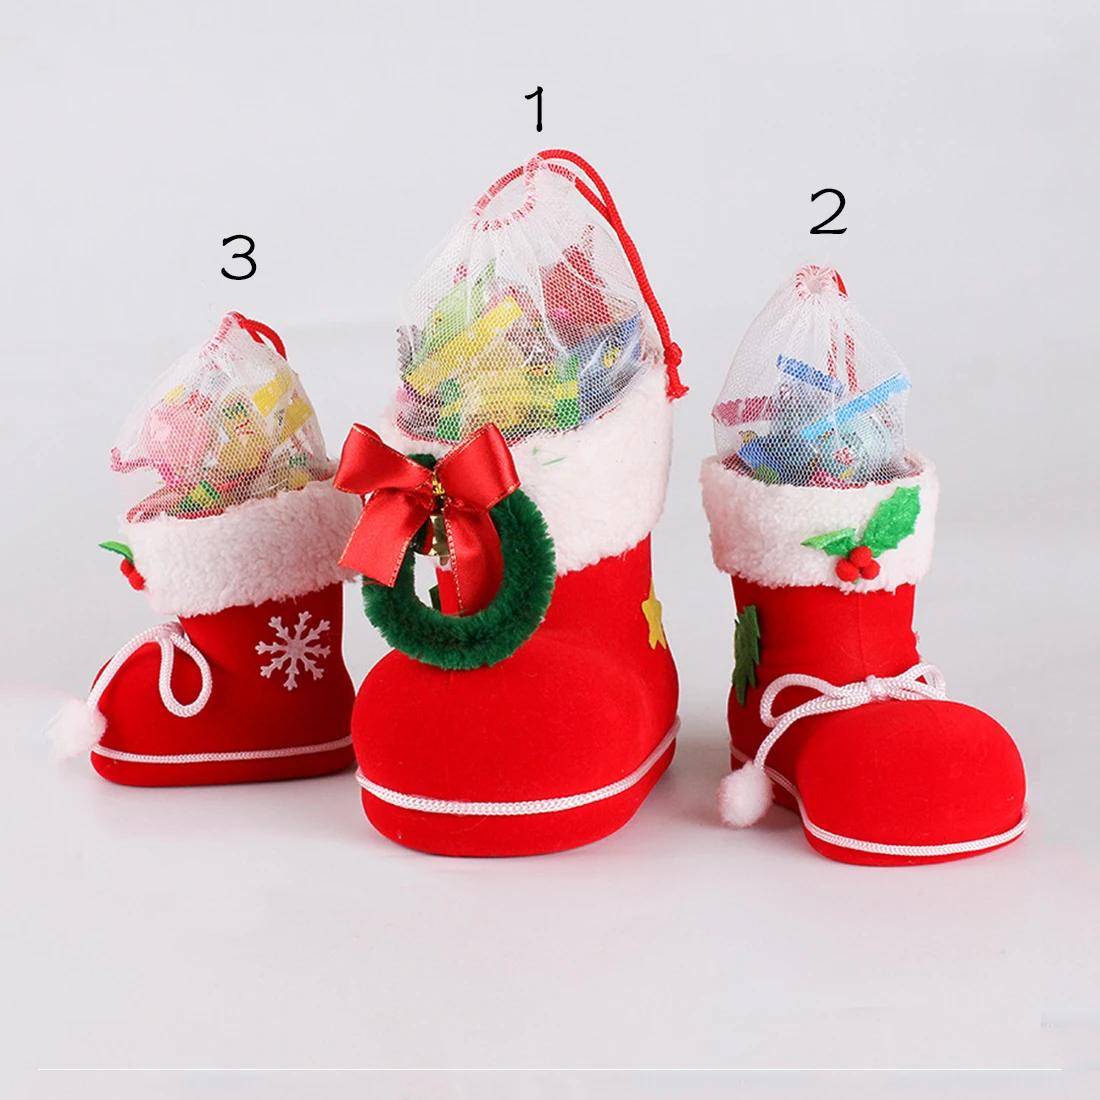 2017 Новый 4 размер Рождество Home Decor Санта-Клауса; чулок дети ребенок конфеты подарок держатель сумки елка украшения